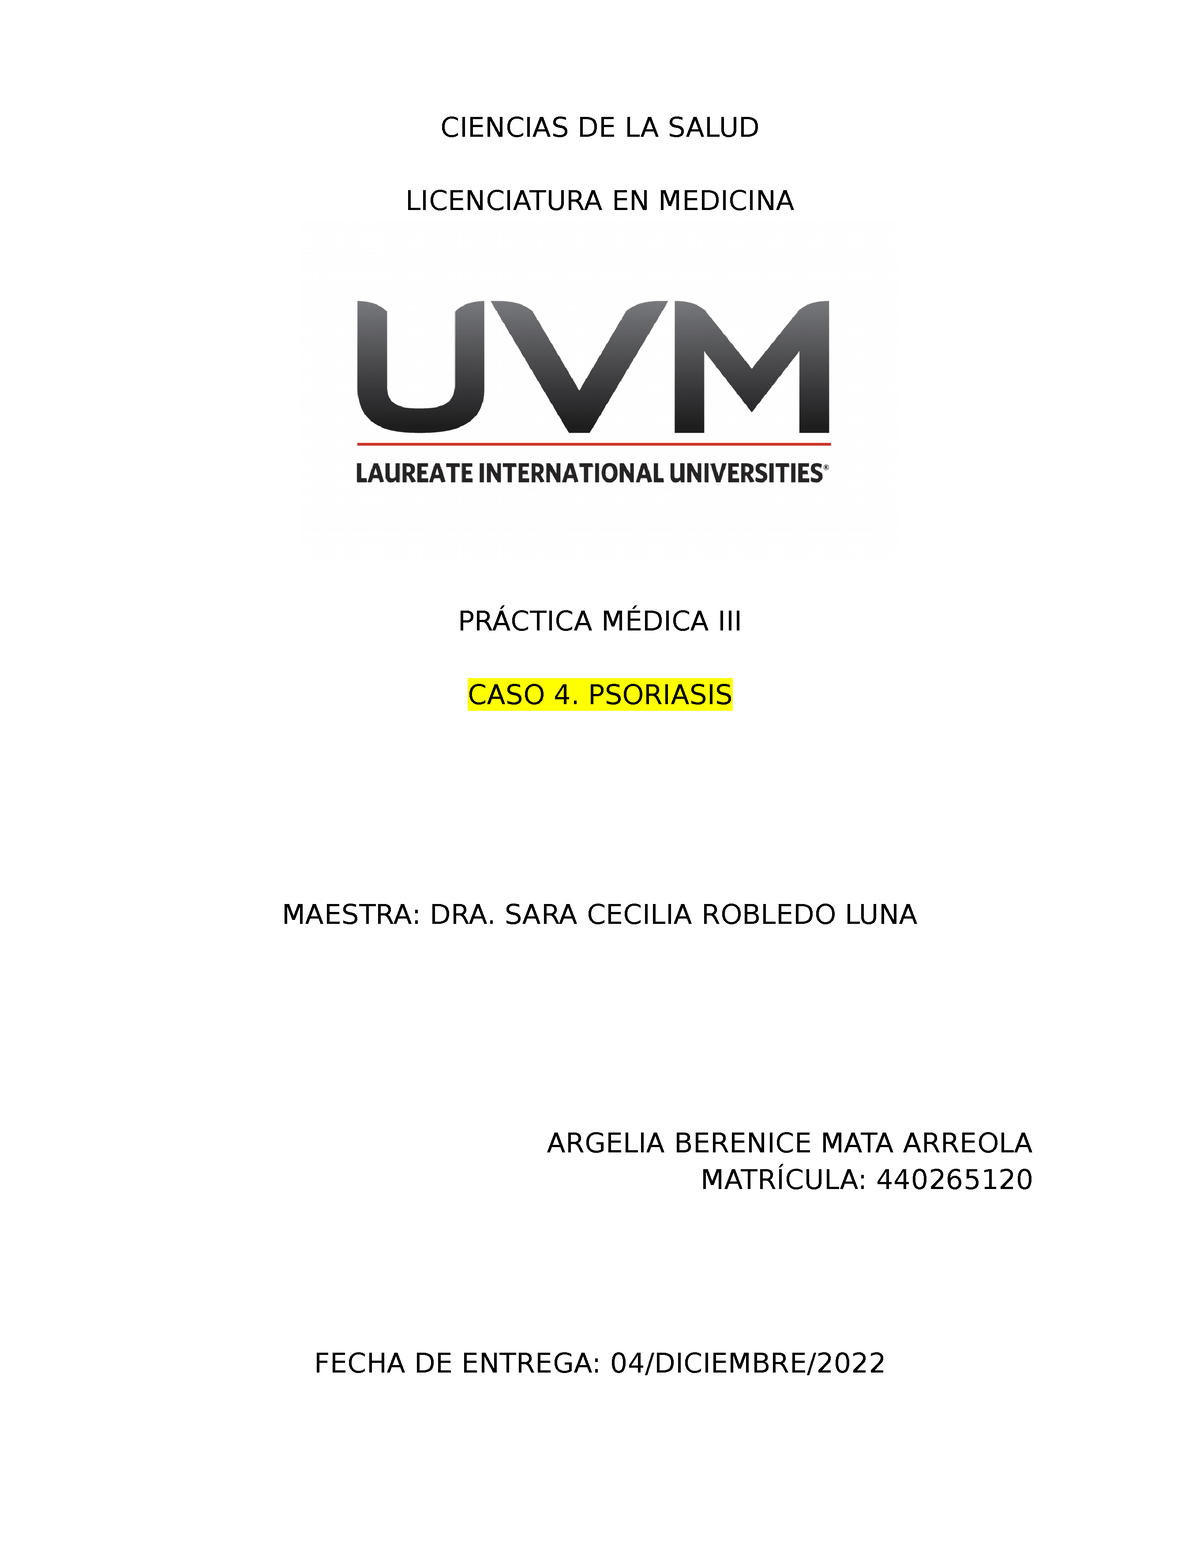 Historia Clínica Ciencias De La Salud Licenciatura En Medicina PrÁctica MÉdica Iii Caso 4 4507